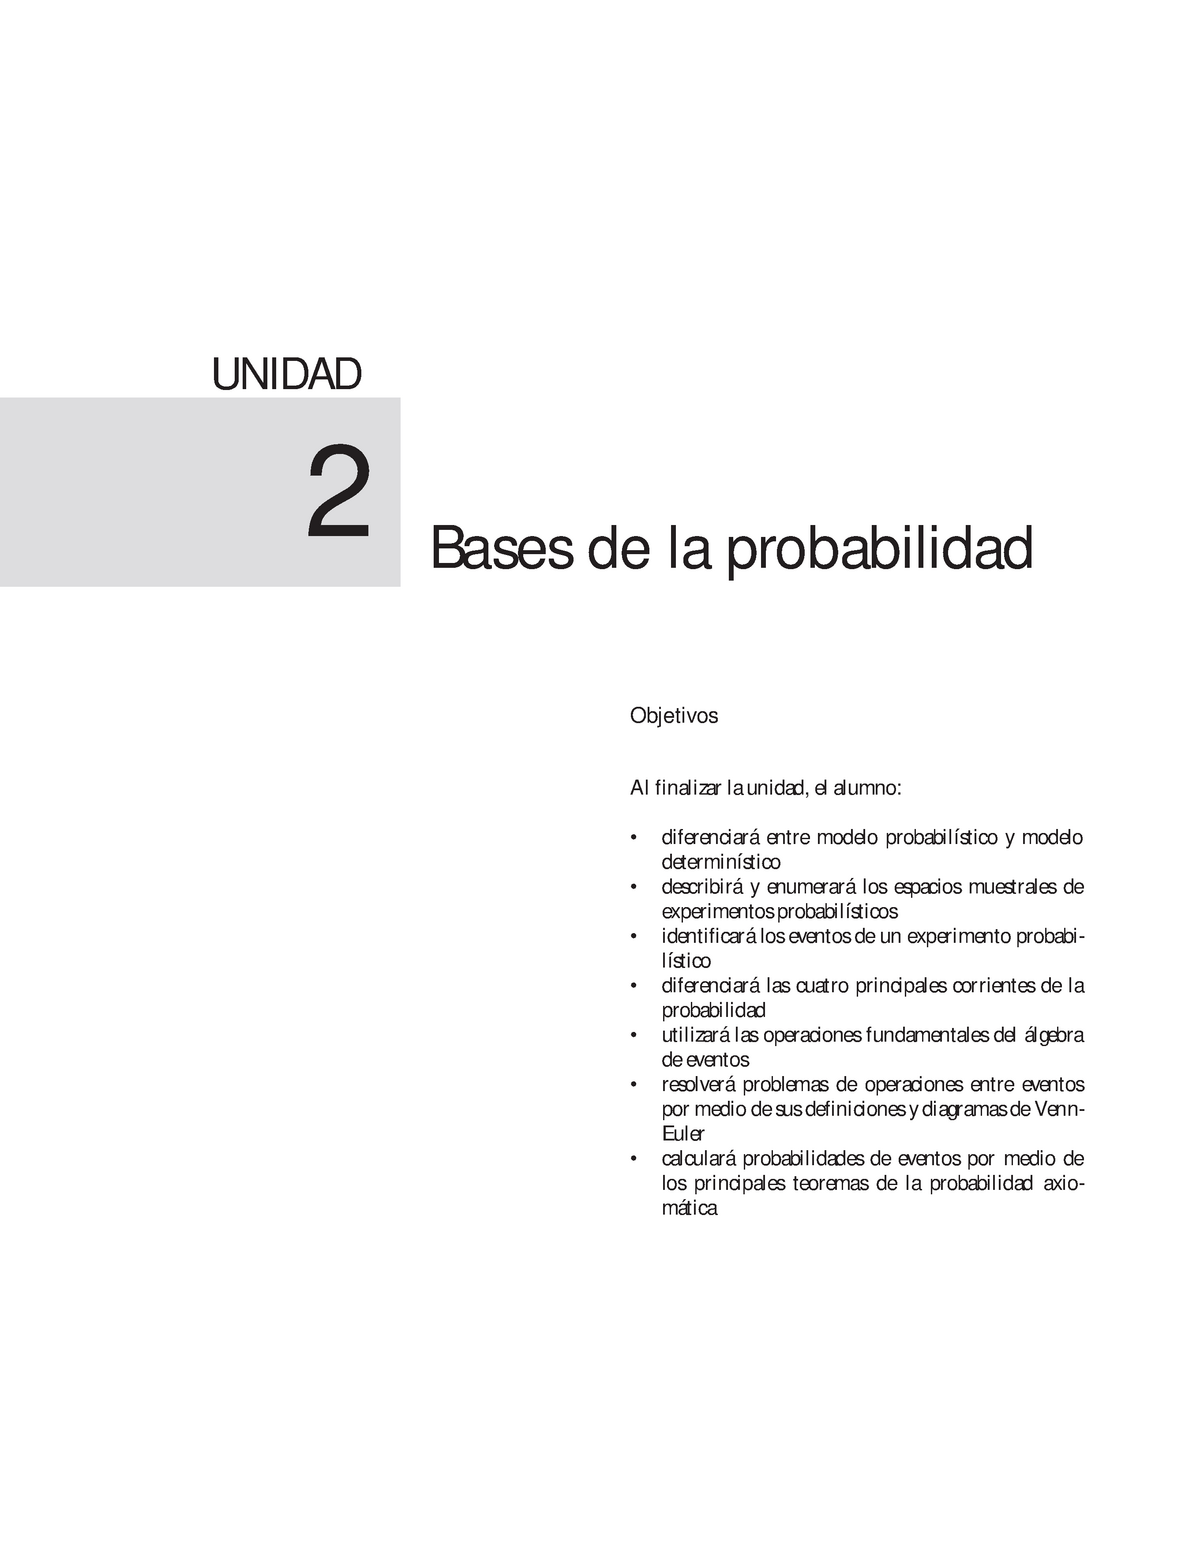 Estadistica y Probabilidad, bases de la probalidad, Modelos determinísticos  y probabilísticos - Studocu